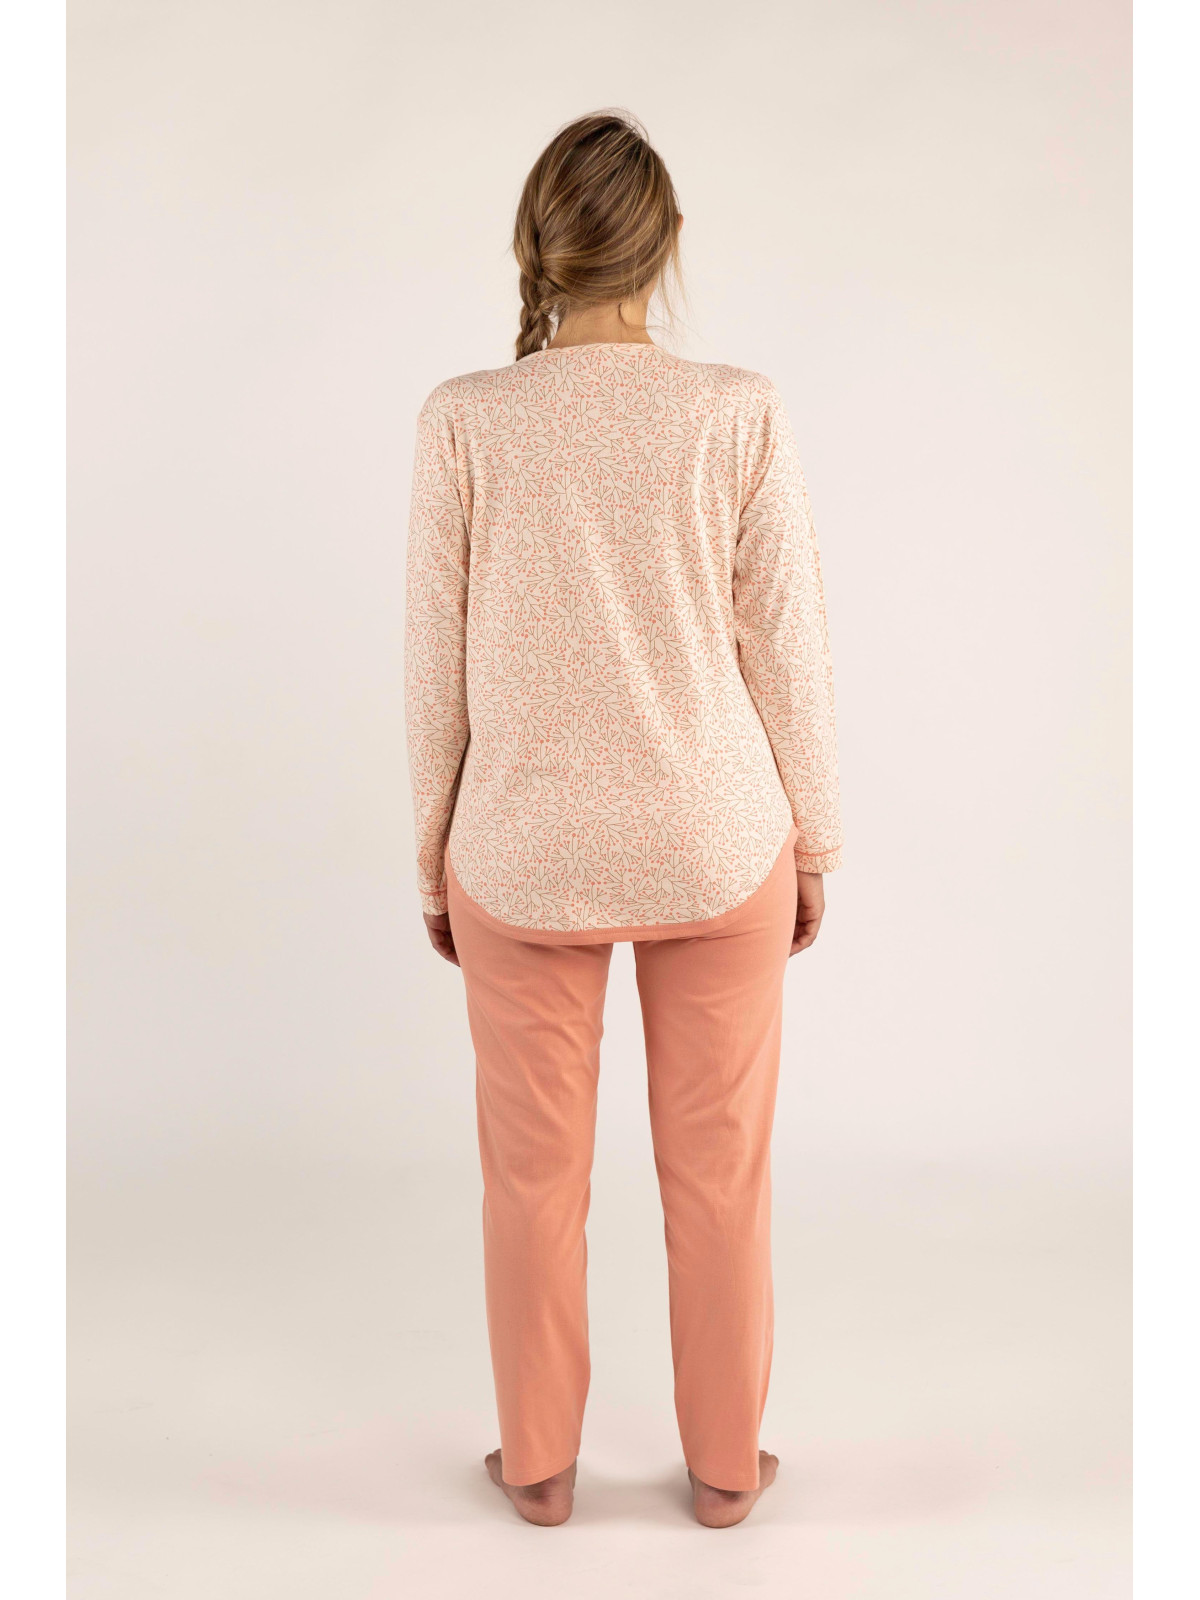 Pyjama boutonné, arrondi, haut imprimé et bas rose « Songe d’automne »